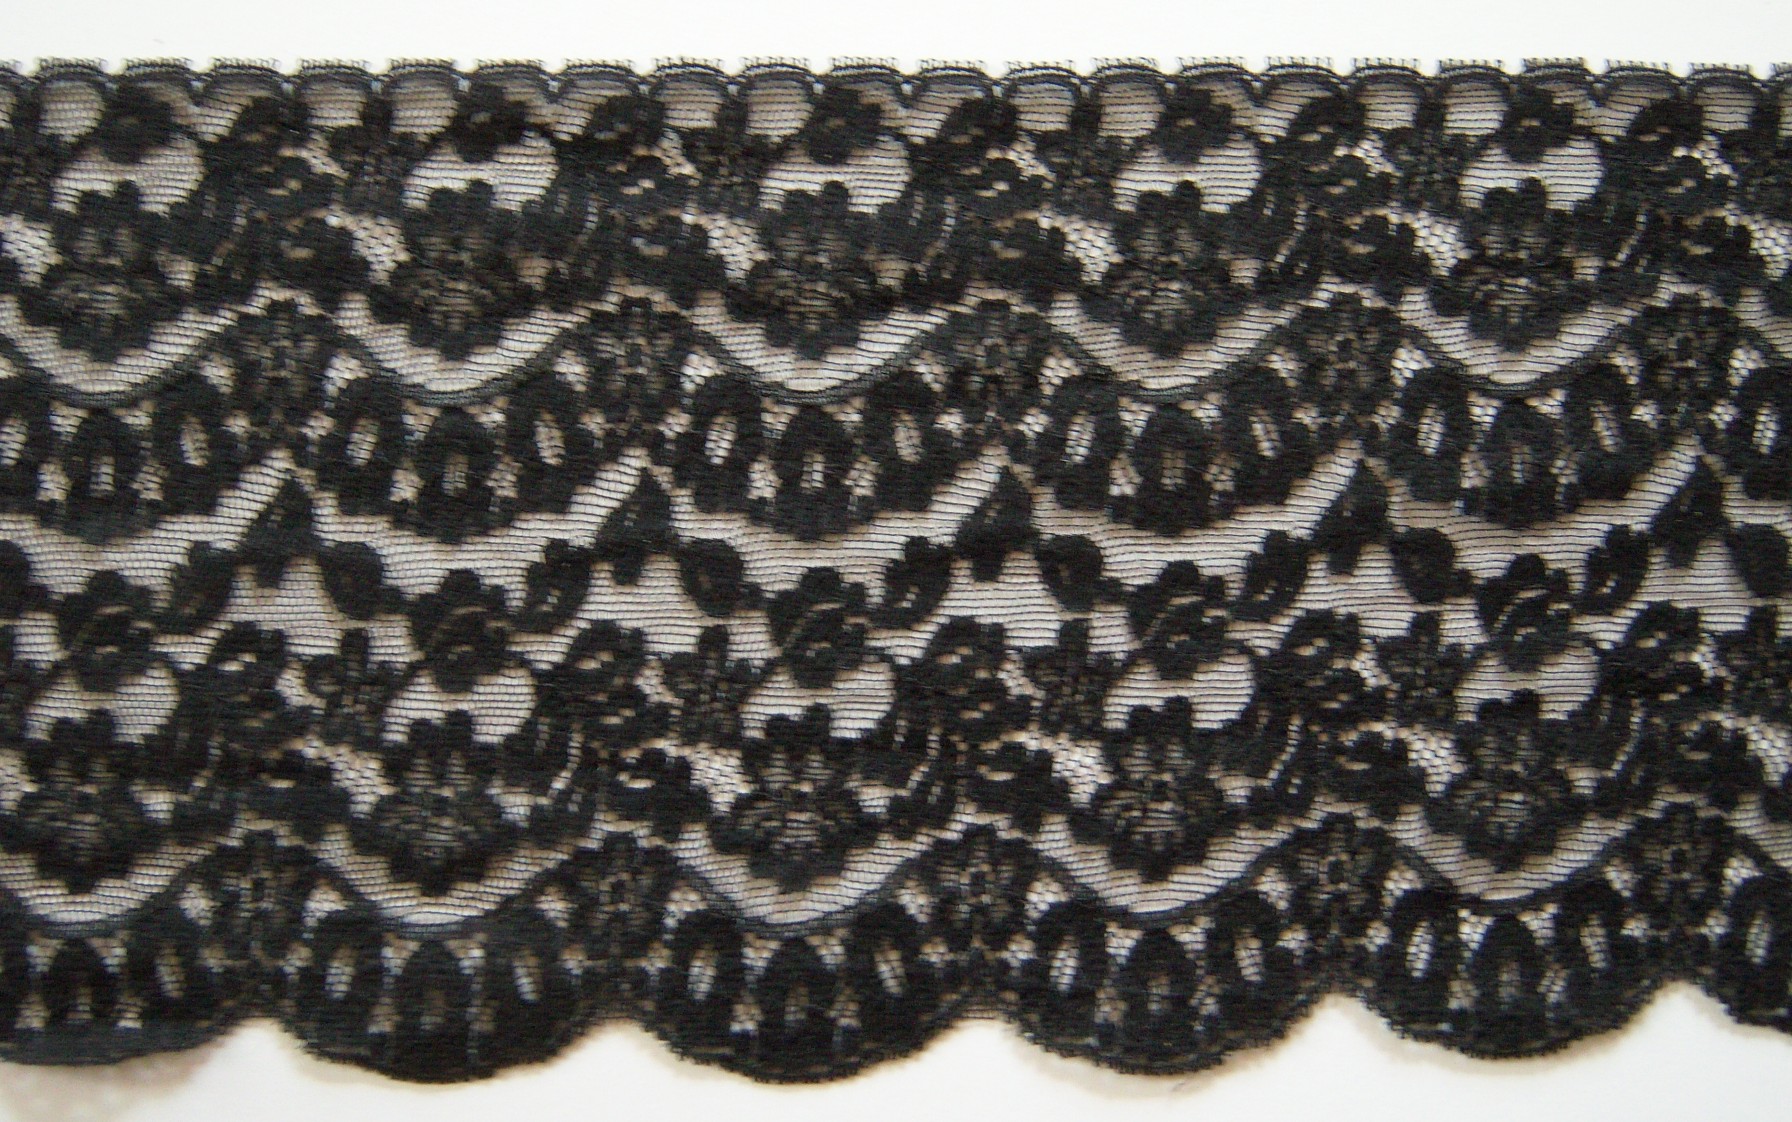 Black 4 3/4" Nylon Lace